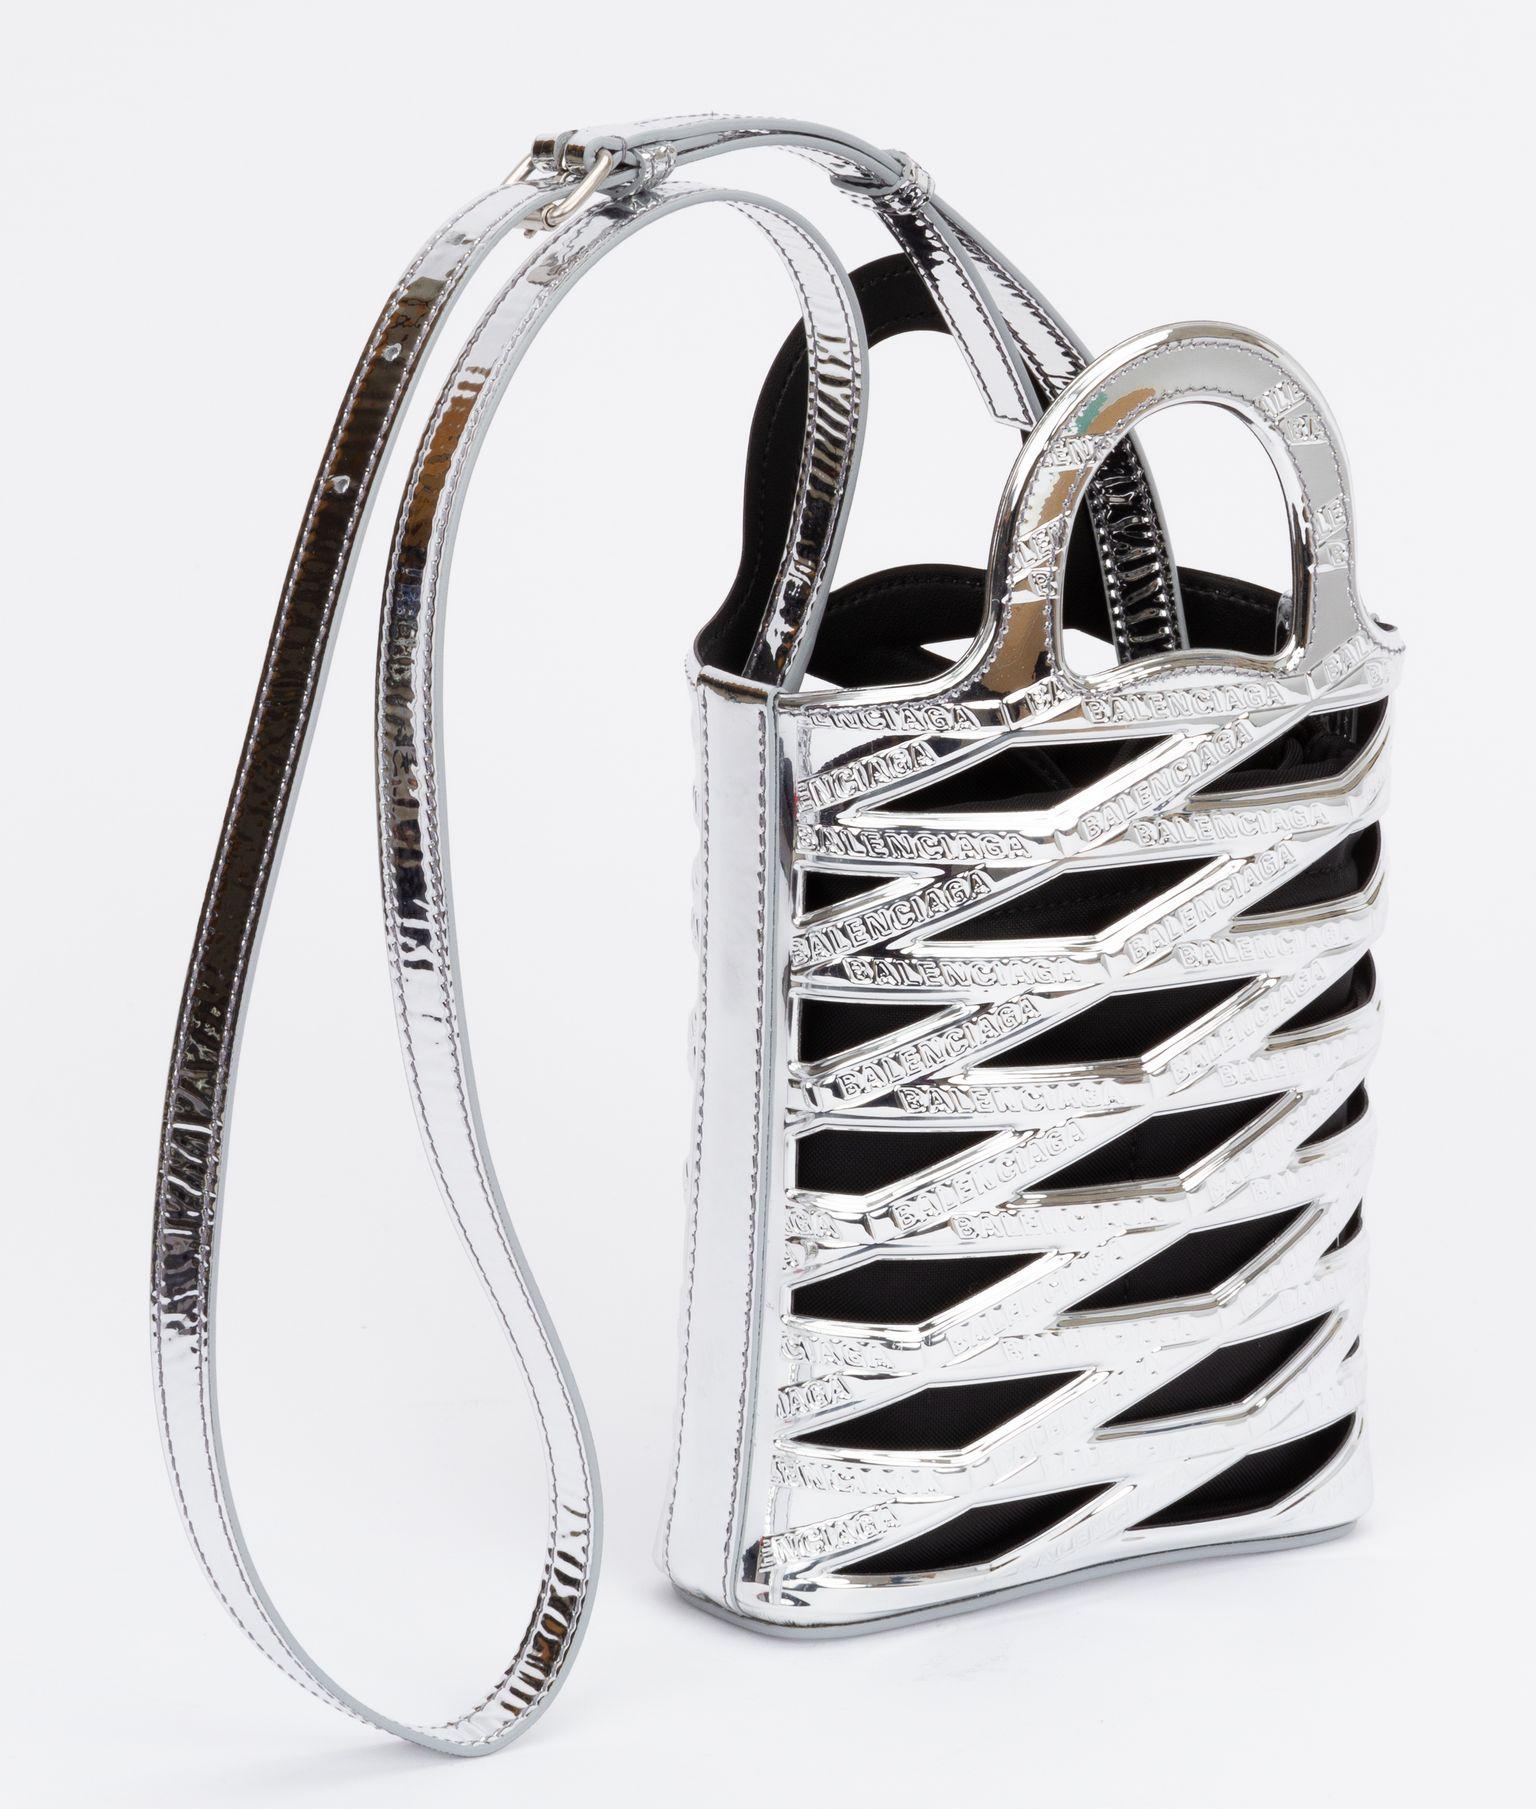 Balenciaga new mirror silver leather 2 way bag. Comes with adjustable and detachable shoulder strap. Shoulder strap drop 18